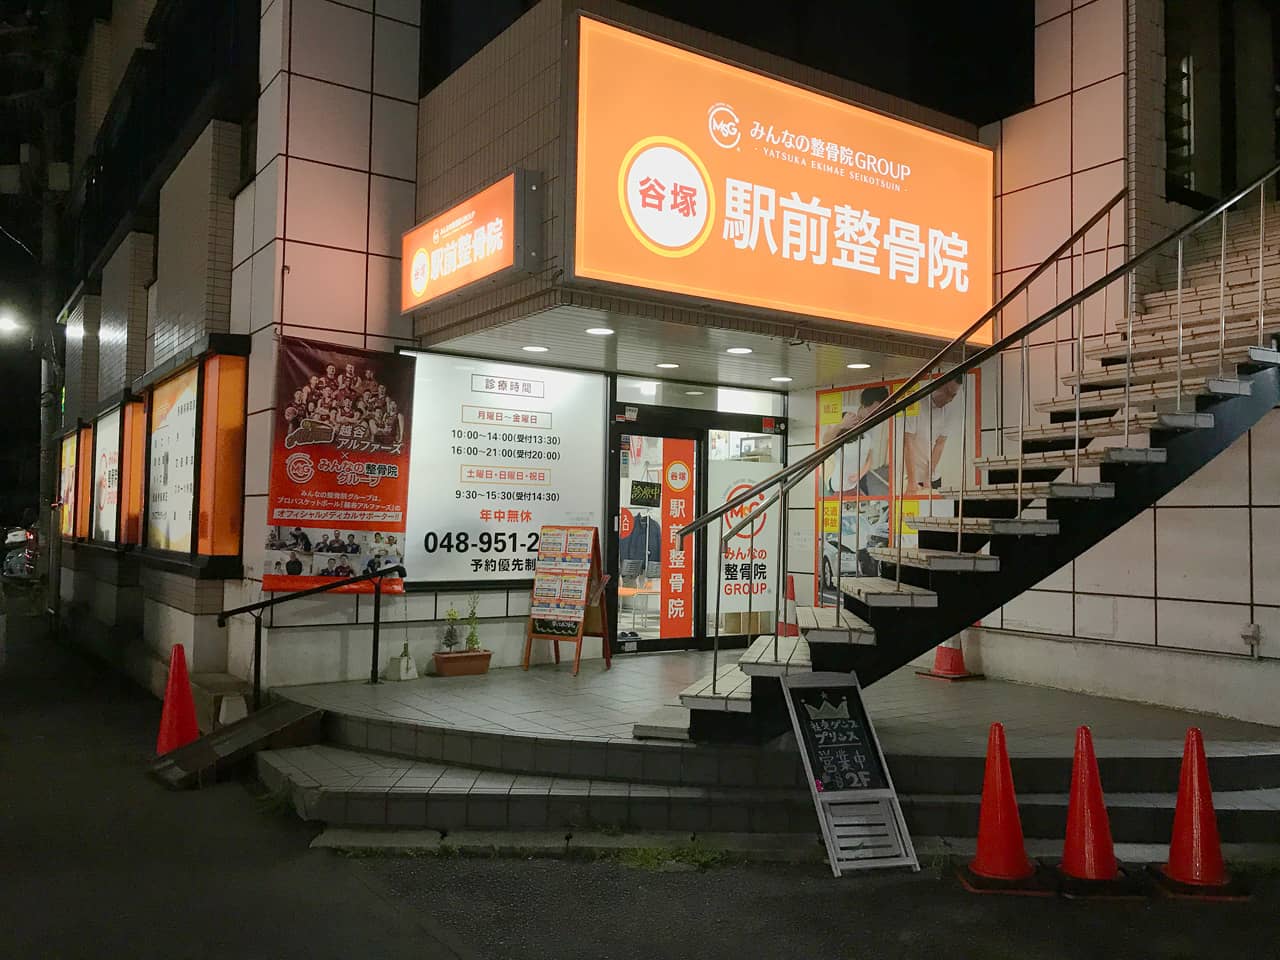 谷塚駅前整骨院様の店舗入り口